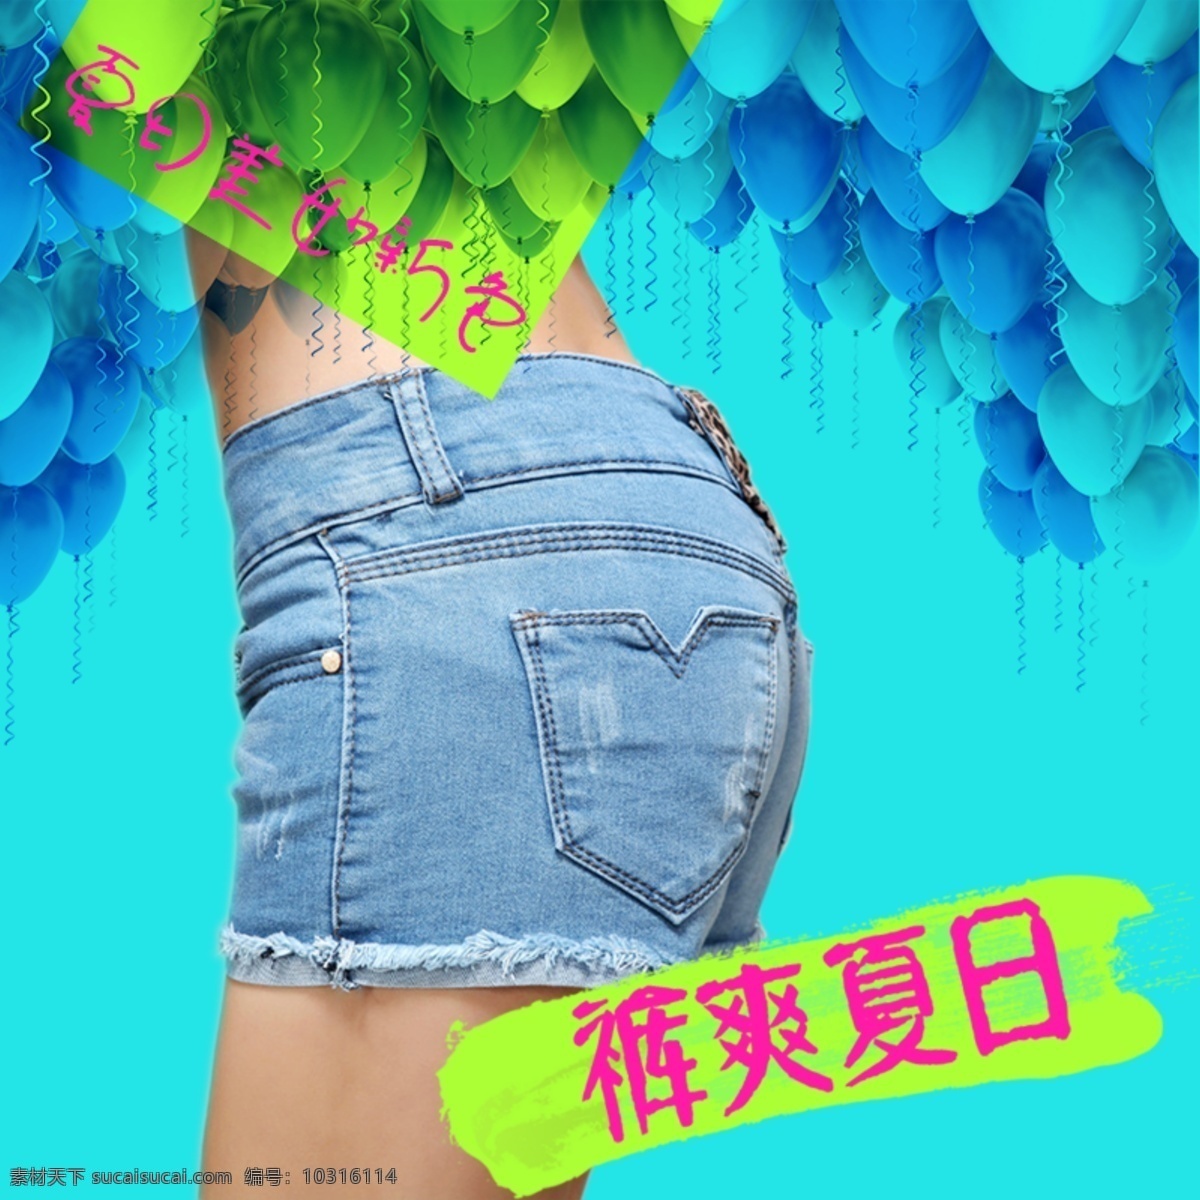 夏季热裤 夏季 热裤 新潮 女裤 女装 青色 天蓝色